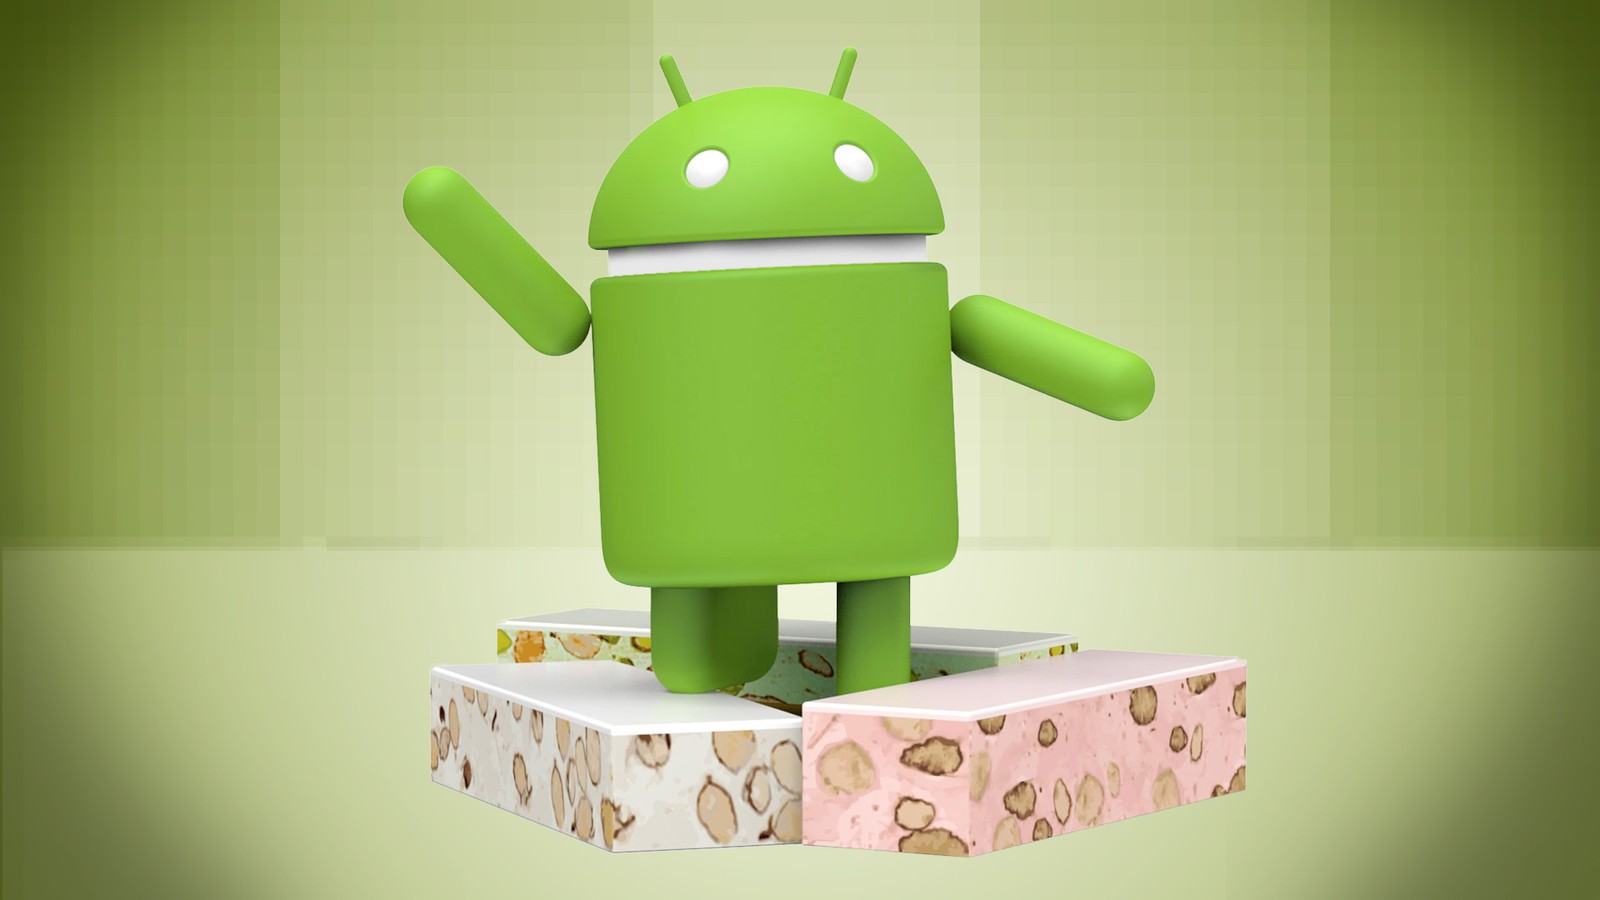 Podział androidowego tortu – Nougat coraz silniejszy, Marshmallow nadal największy